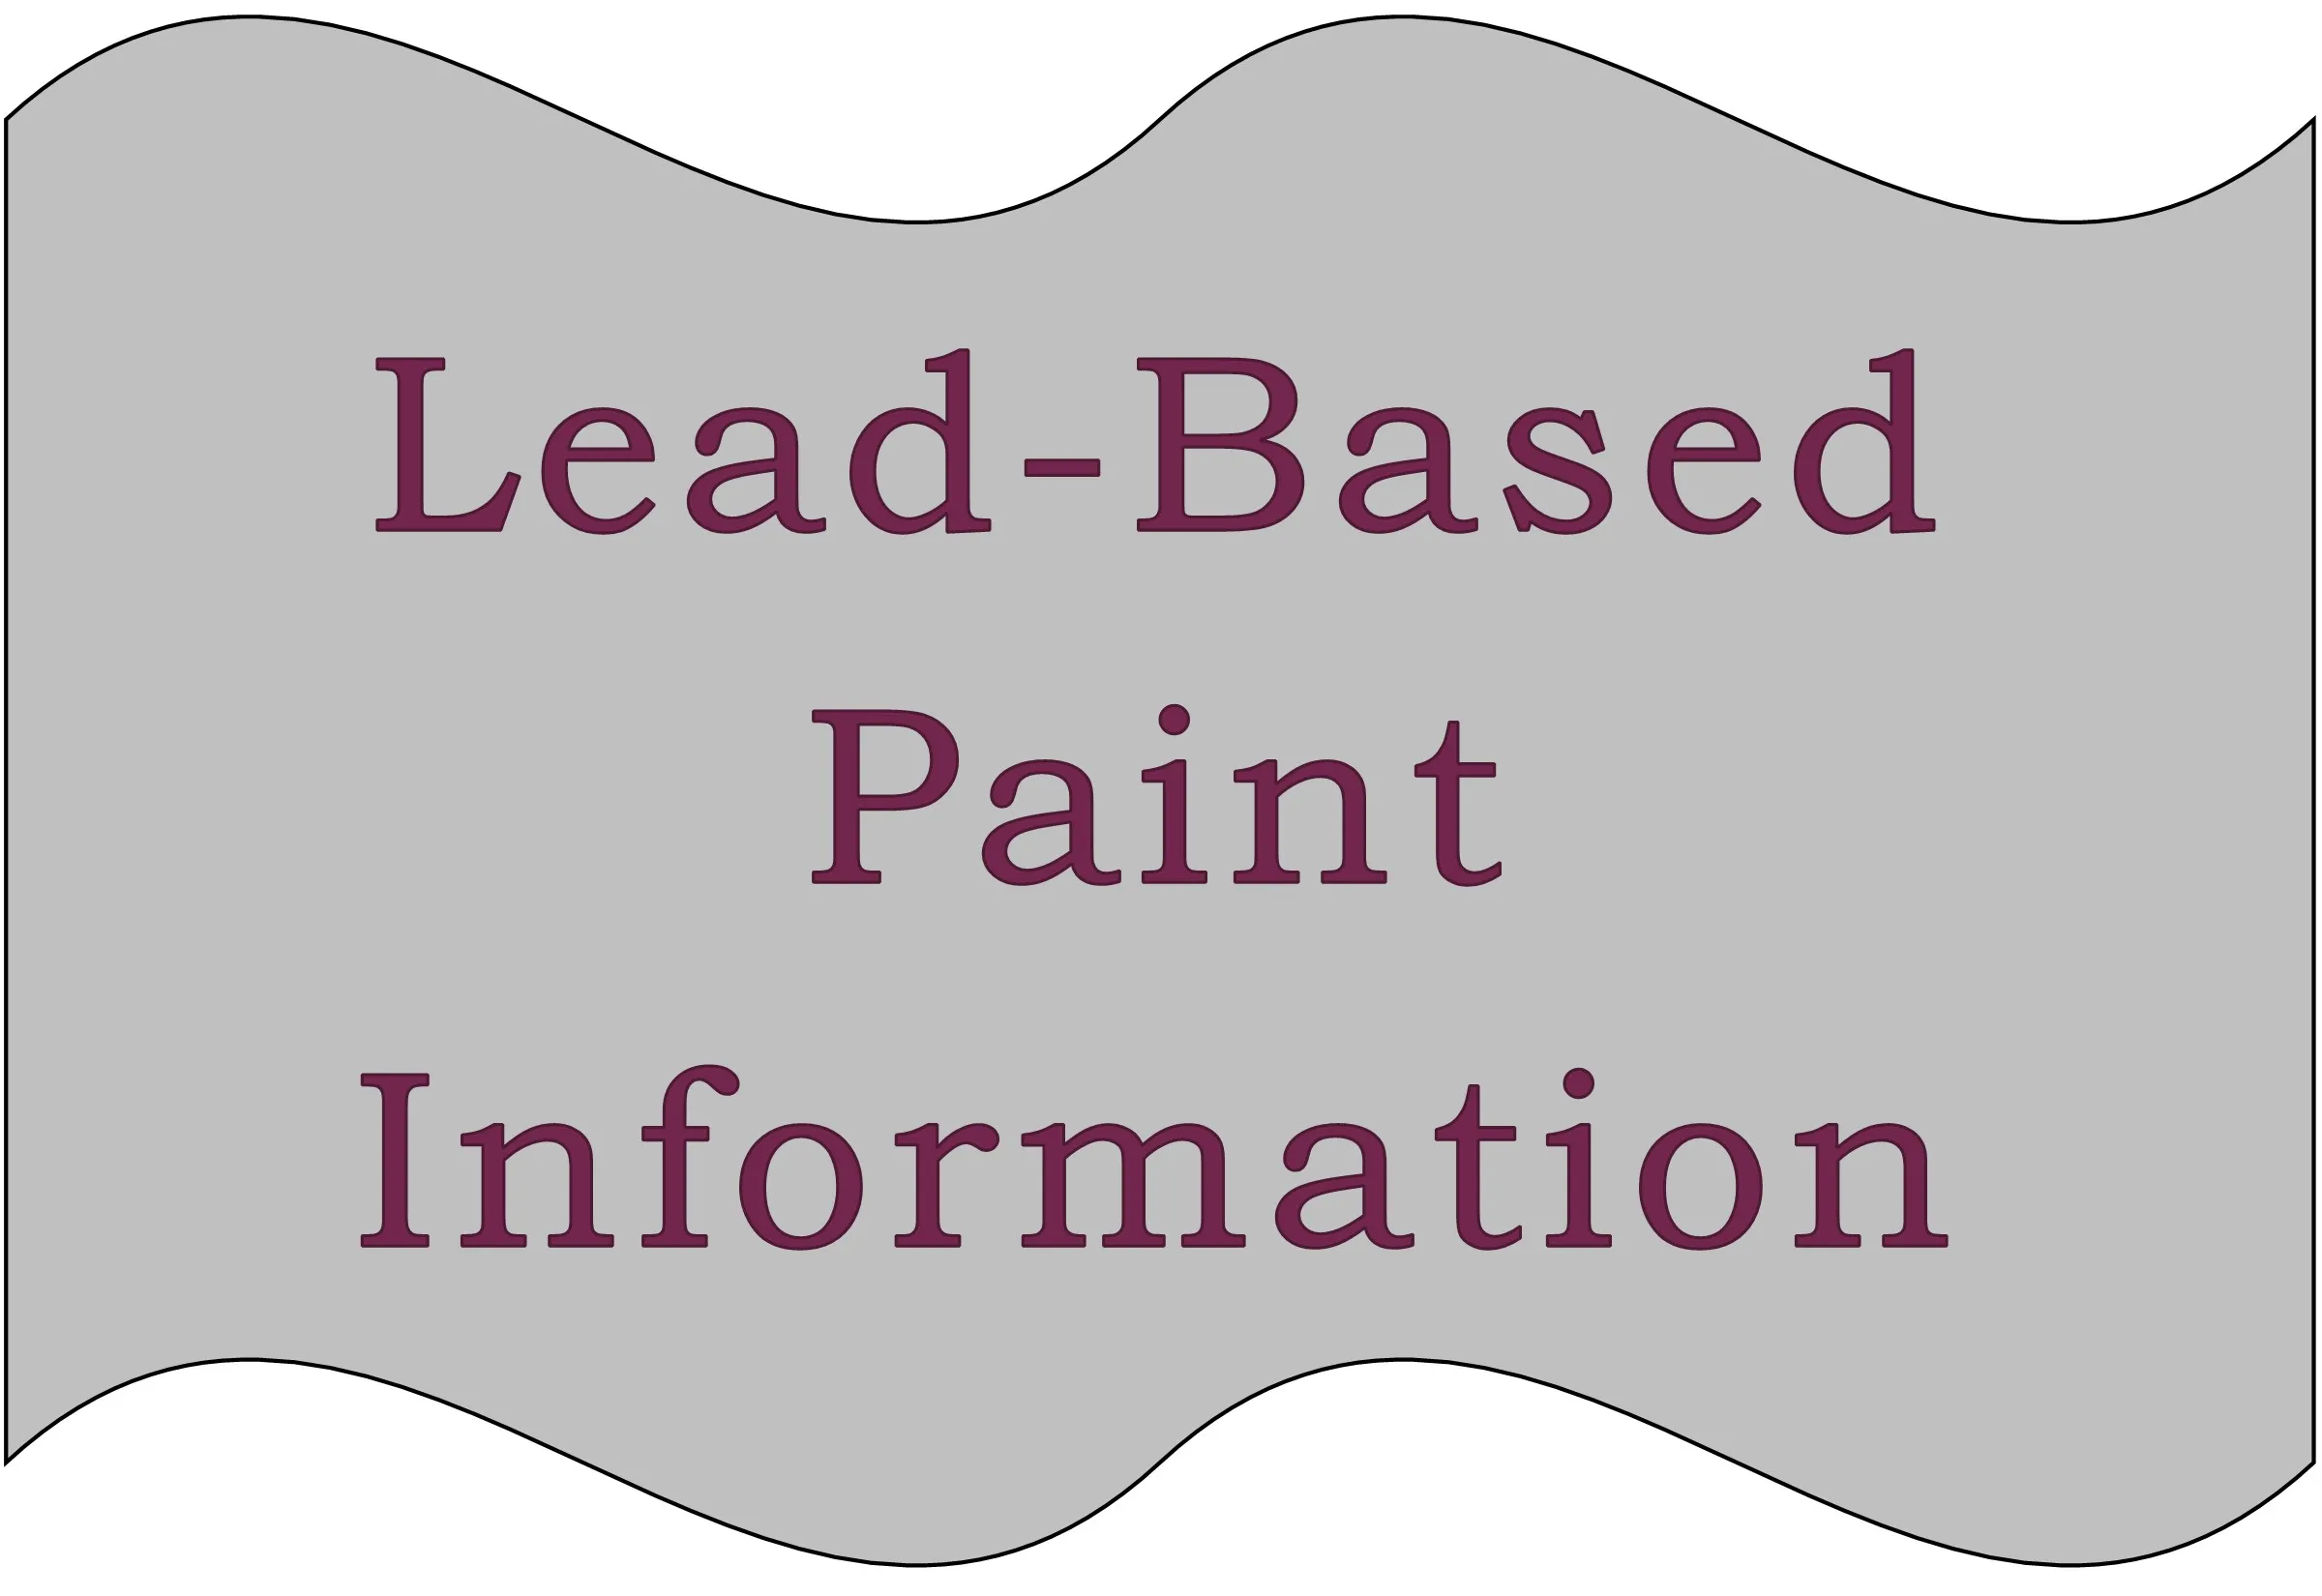 Lead-Based Paint